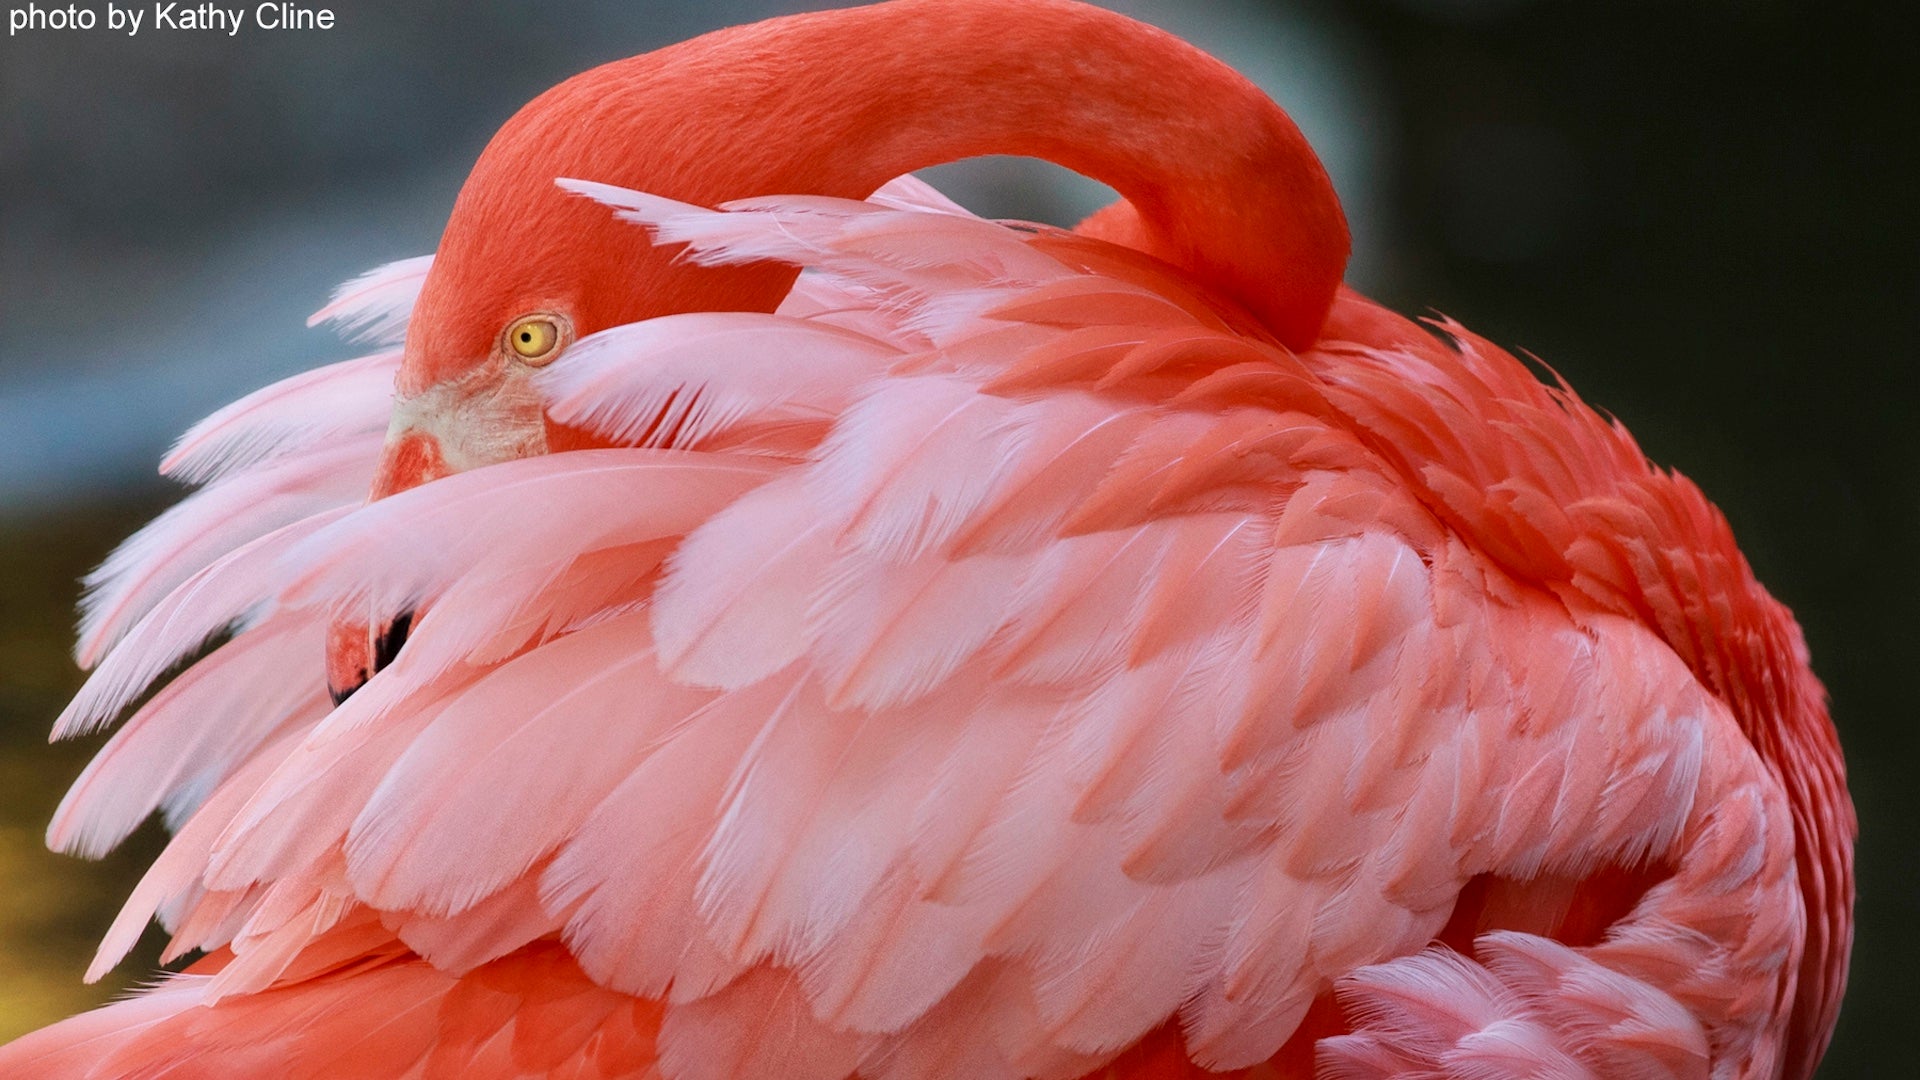 Up close shot of a pink flamingo